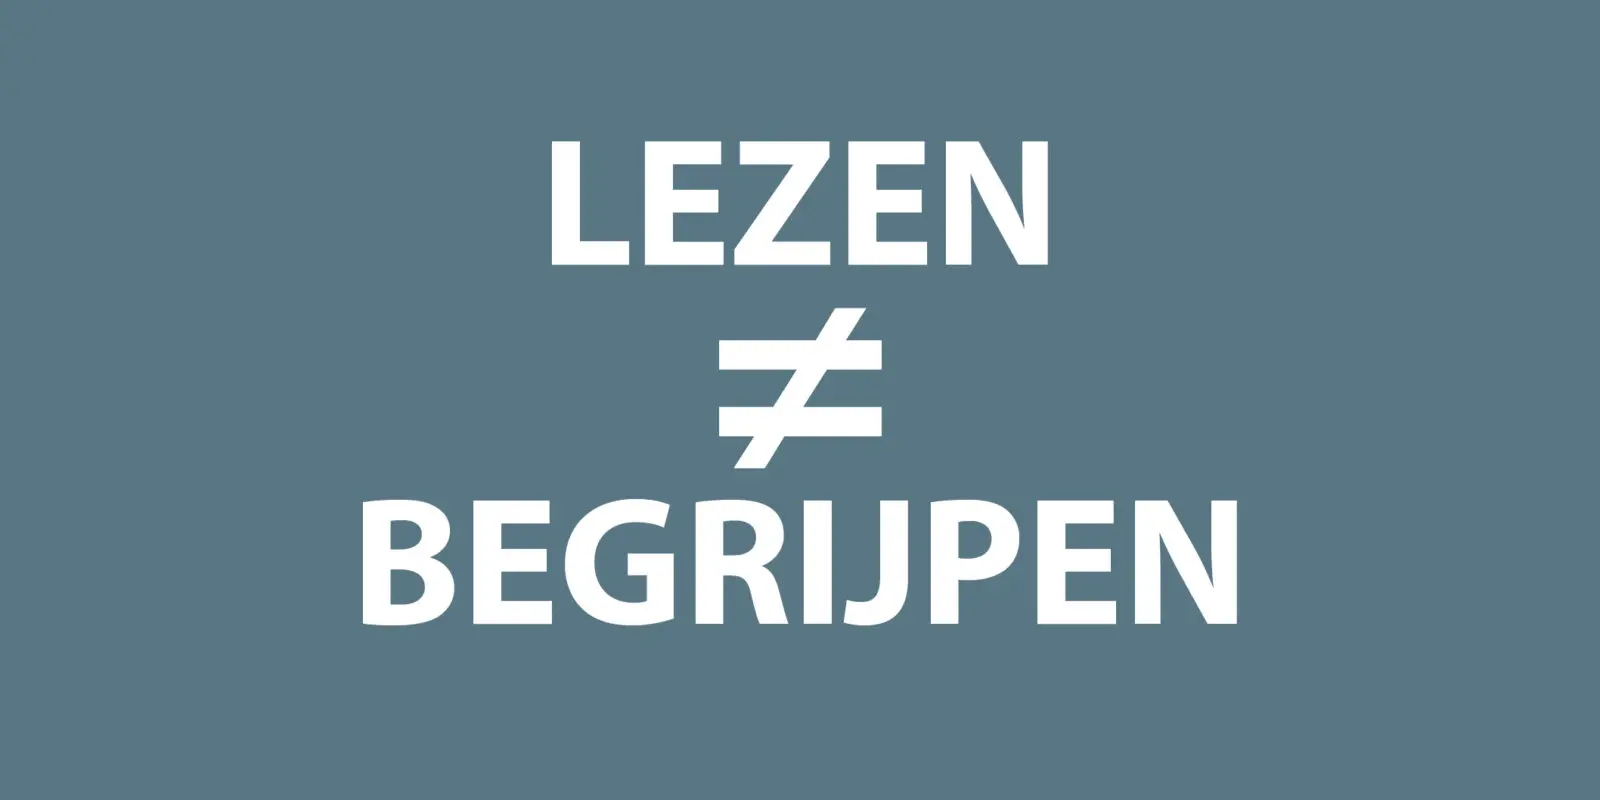 Image about Lezen ≠ Begrijpen. Tussenrapport.